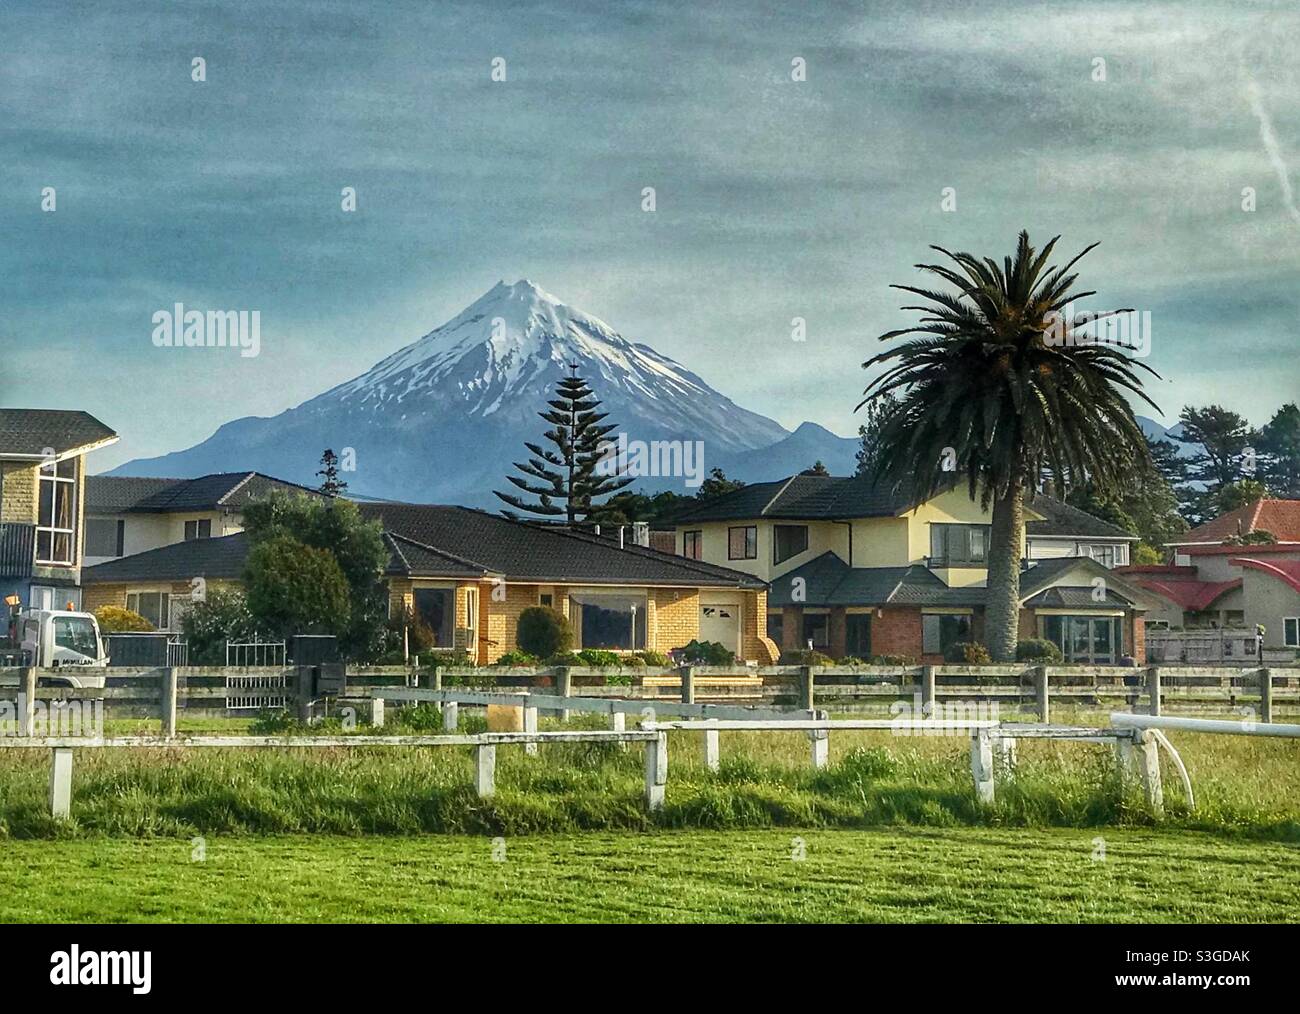 Mount Taranaki looms over New Plymouth on New Zealand’s North Island Stock Photo